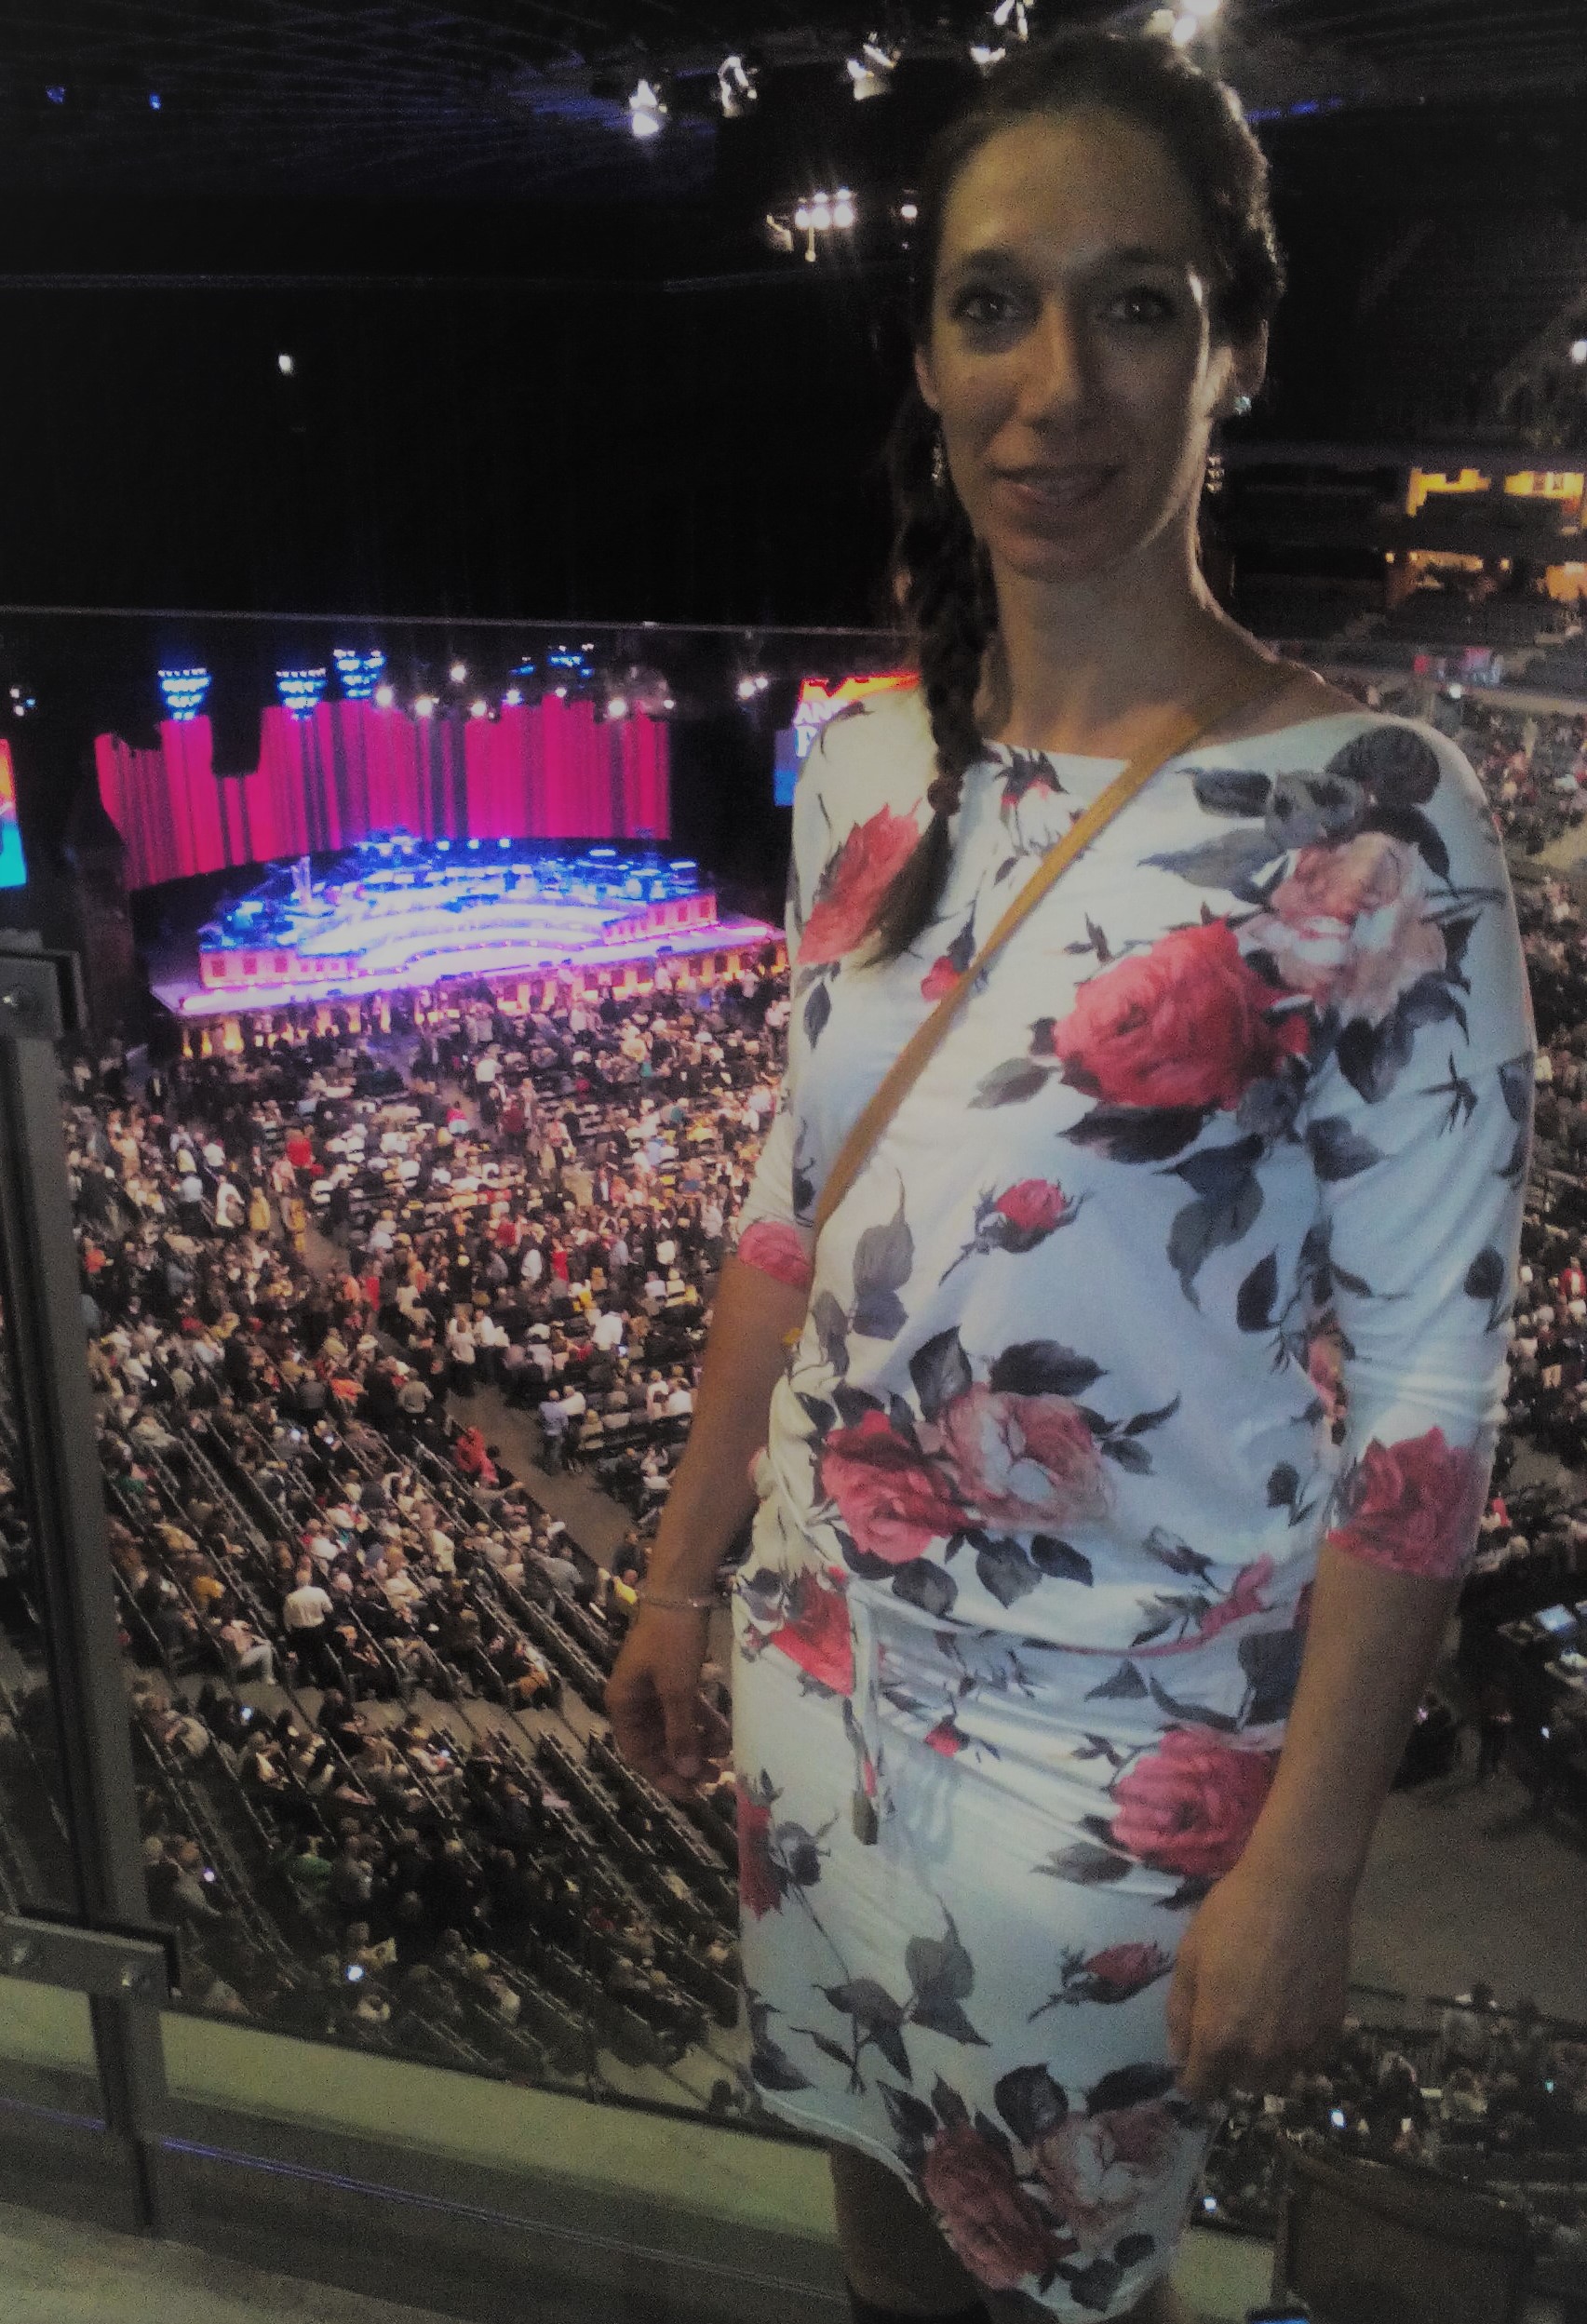 Koncert André Rieu - jaké oblečení? Květované šaty